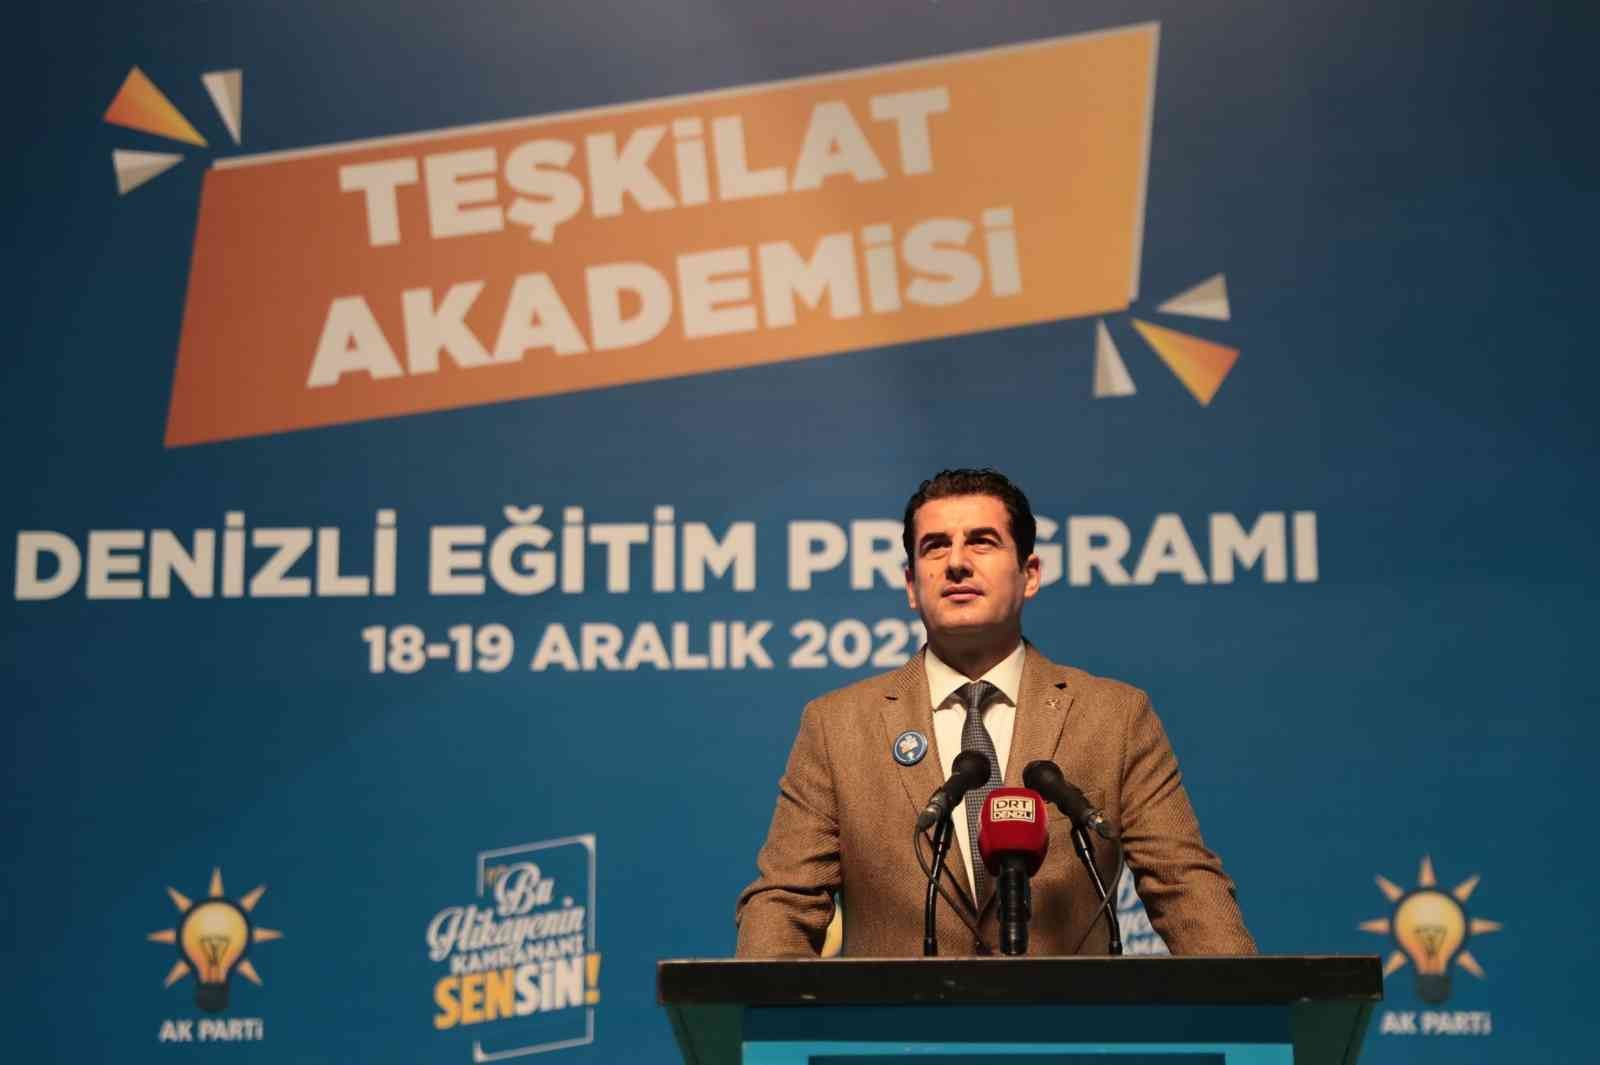 Güngör: AK Parti 2023’te Denizli’de daha da güçlü olacak #denizli